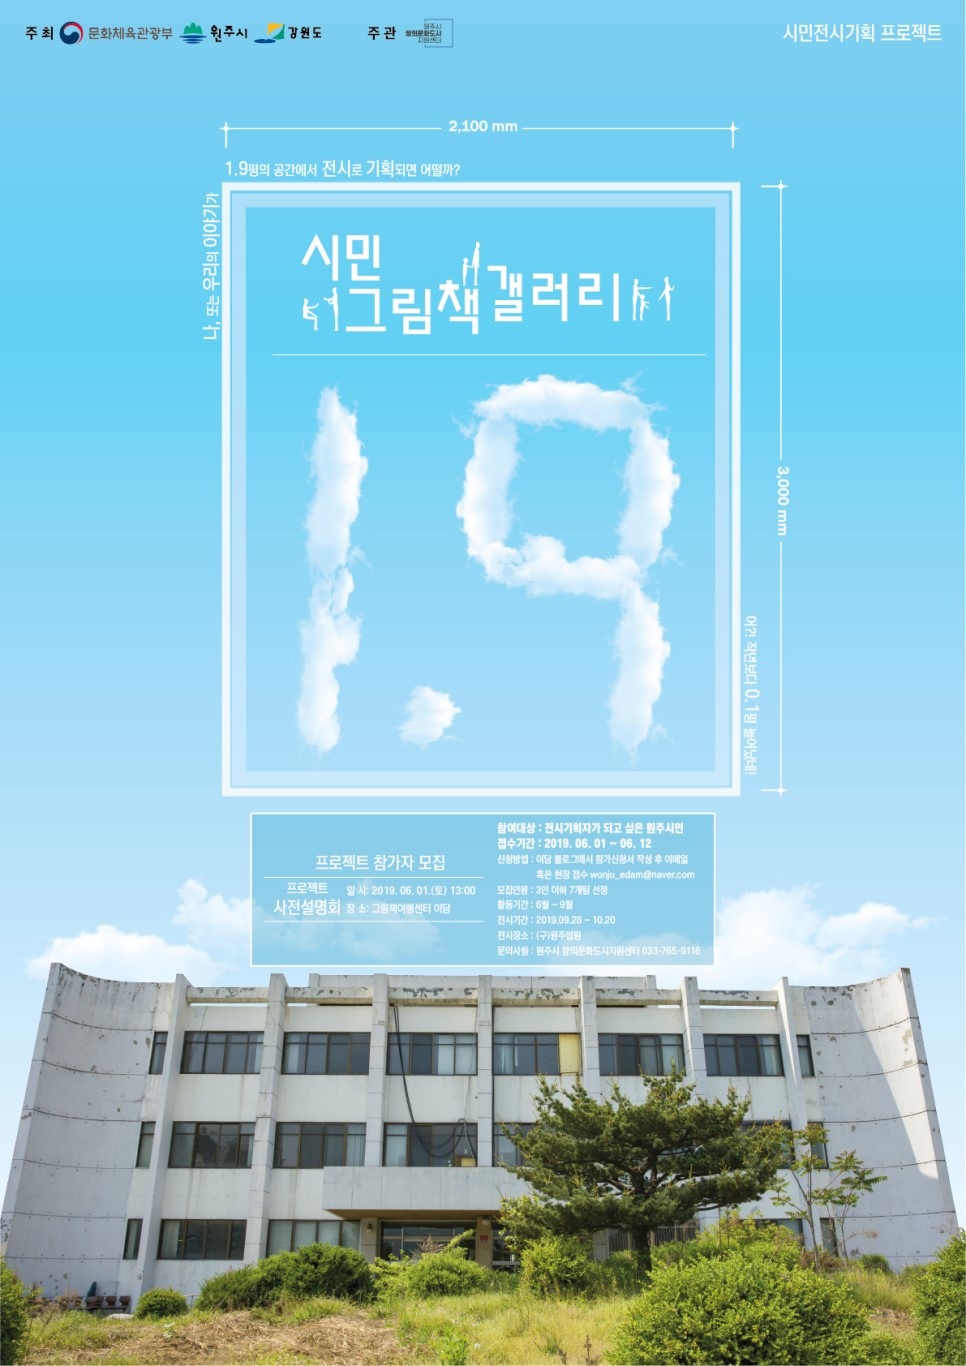 2019 시민전시기획프로젝트 - 시민그림책 갤러리 1.9 참여팀 모집